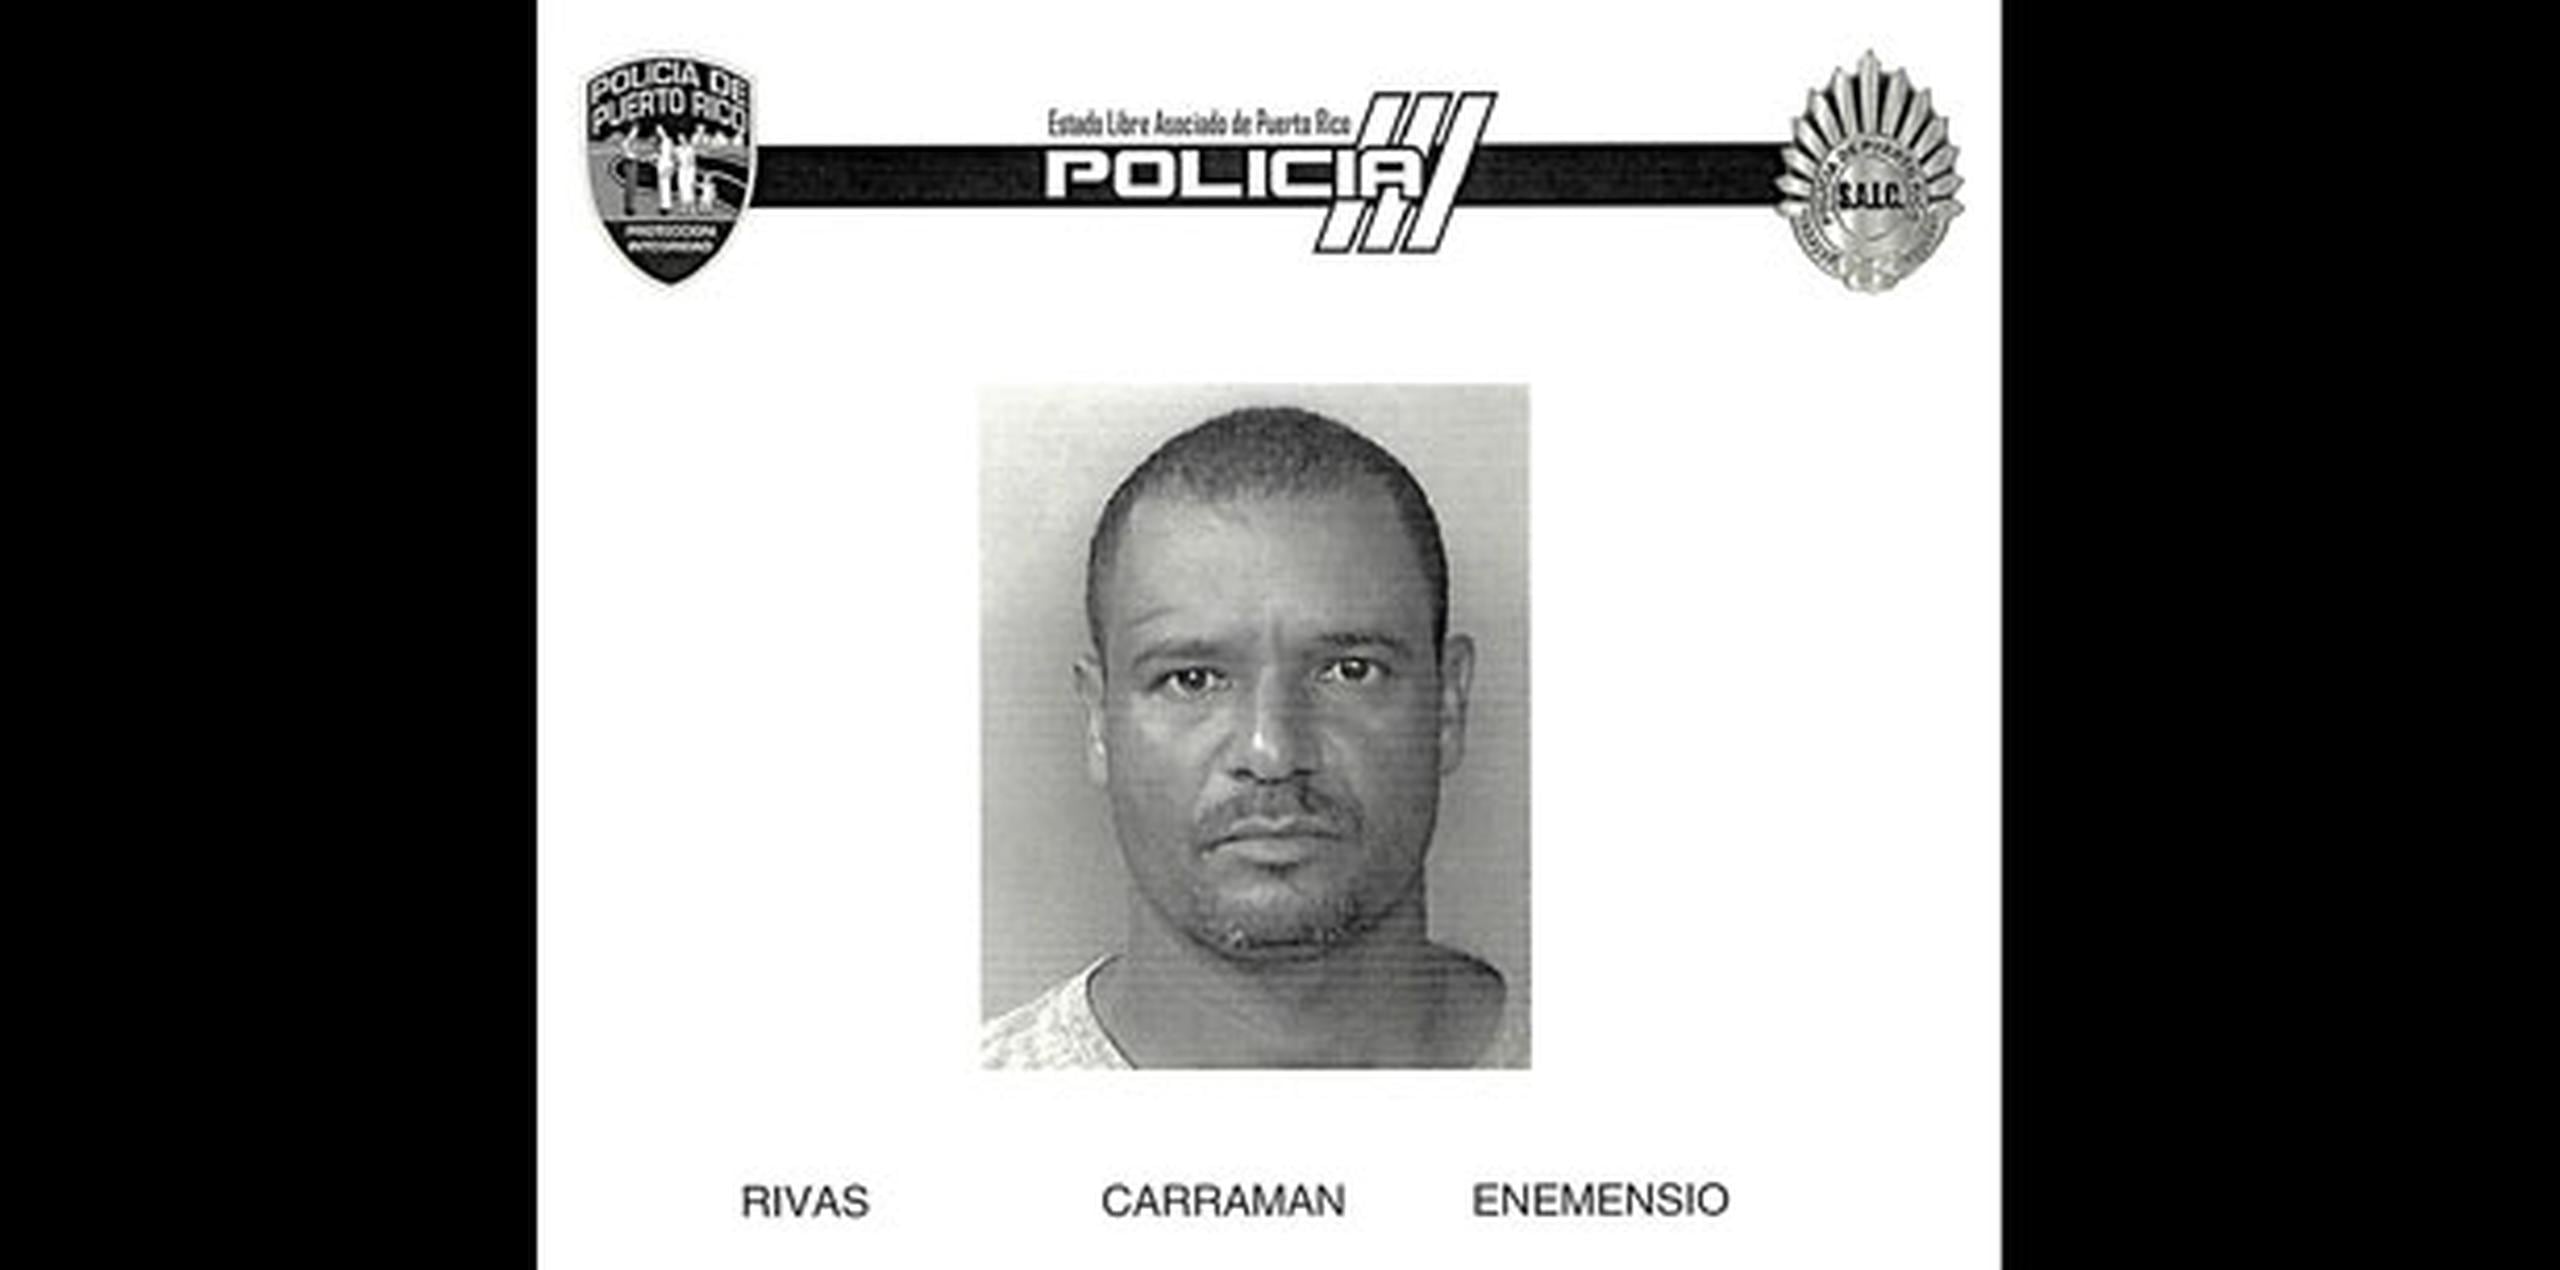 Enemecio Rivas Caraman (Suministrada)